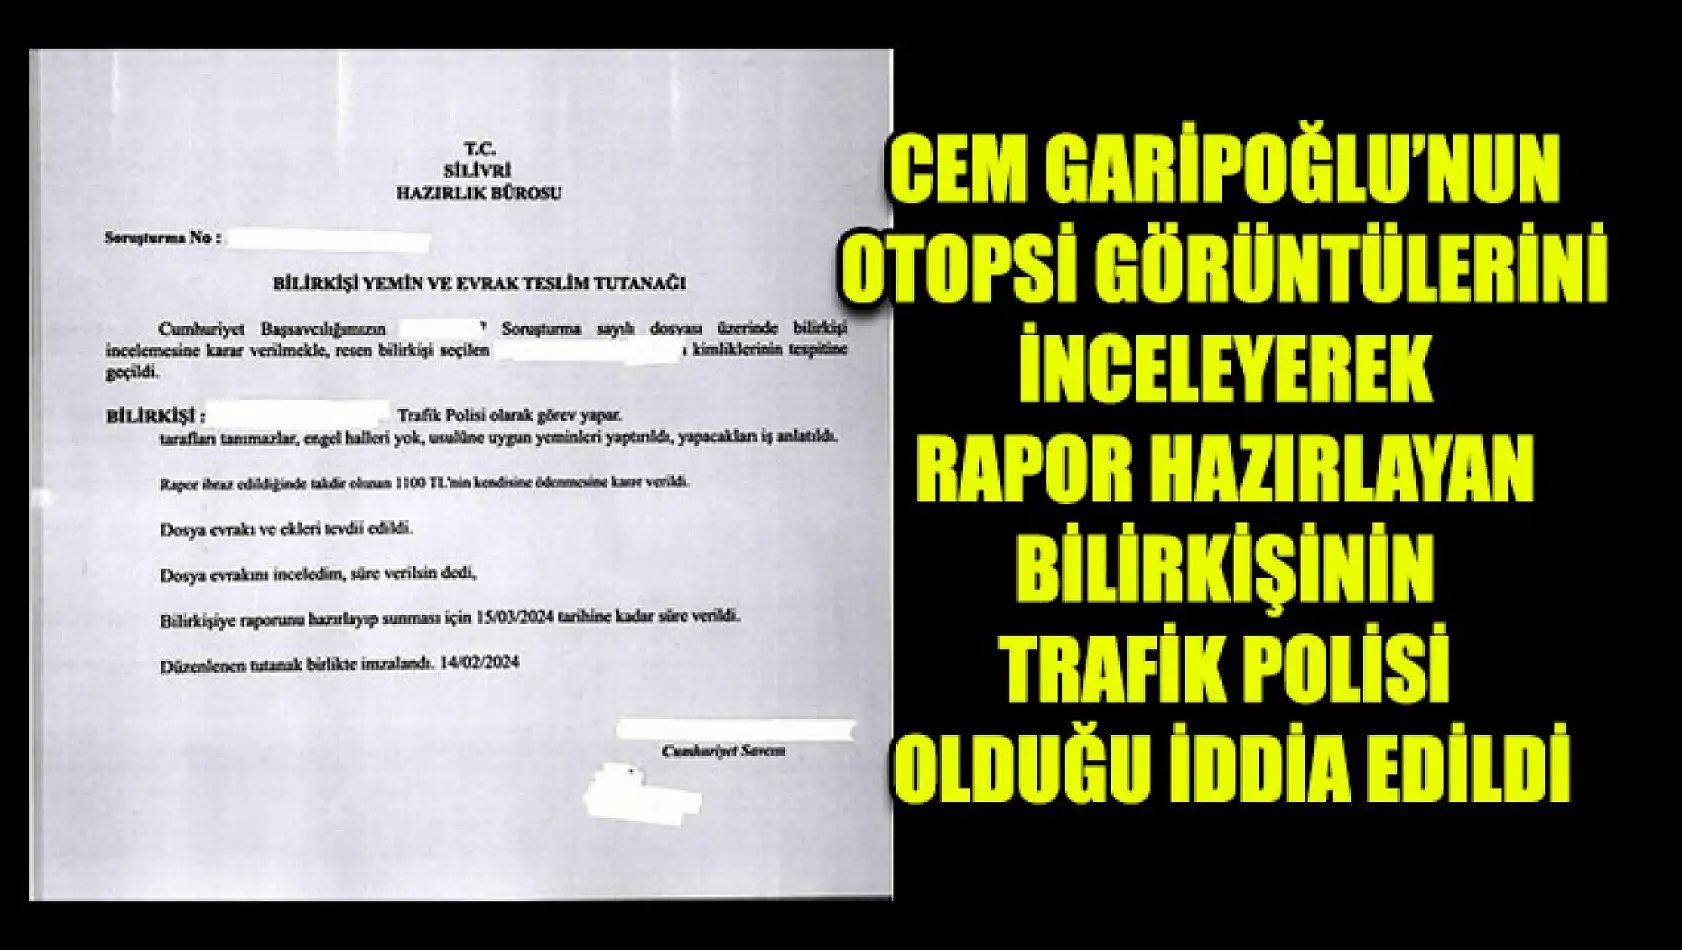 Cem Garipoğlu'nun Otopsi Görüntülerini İnceleyerek Rapor Hazırlayan Bilirkişinin Trafik Polisi Olduğu İddia Edildi